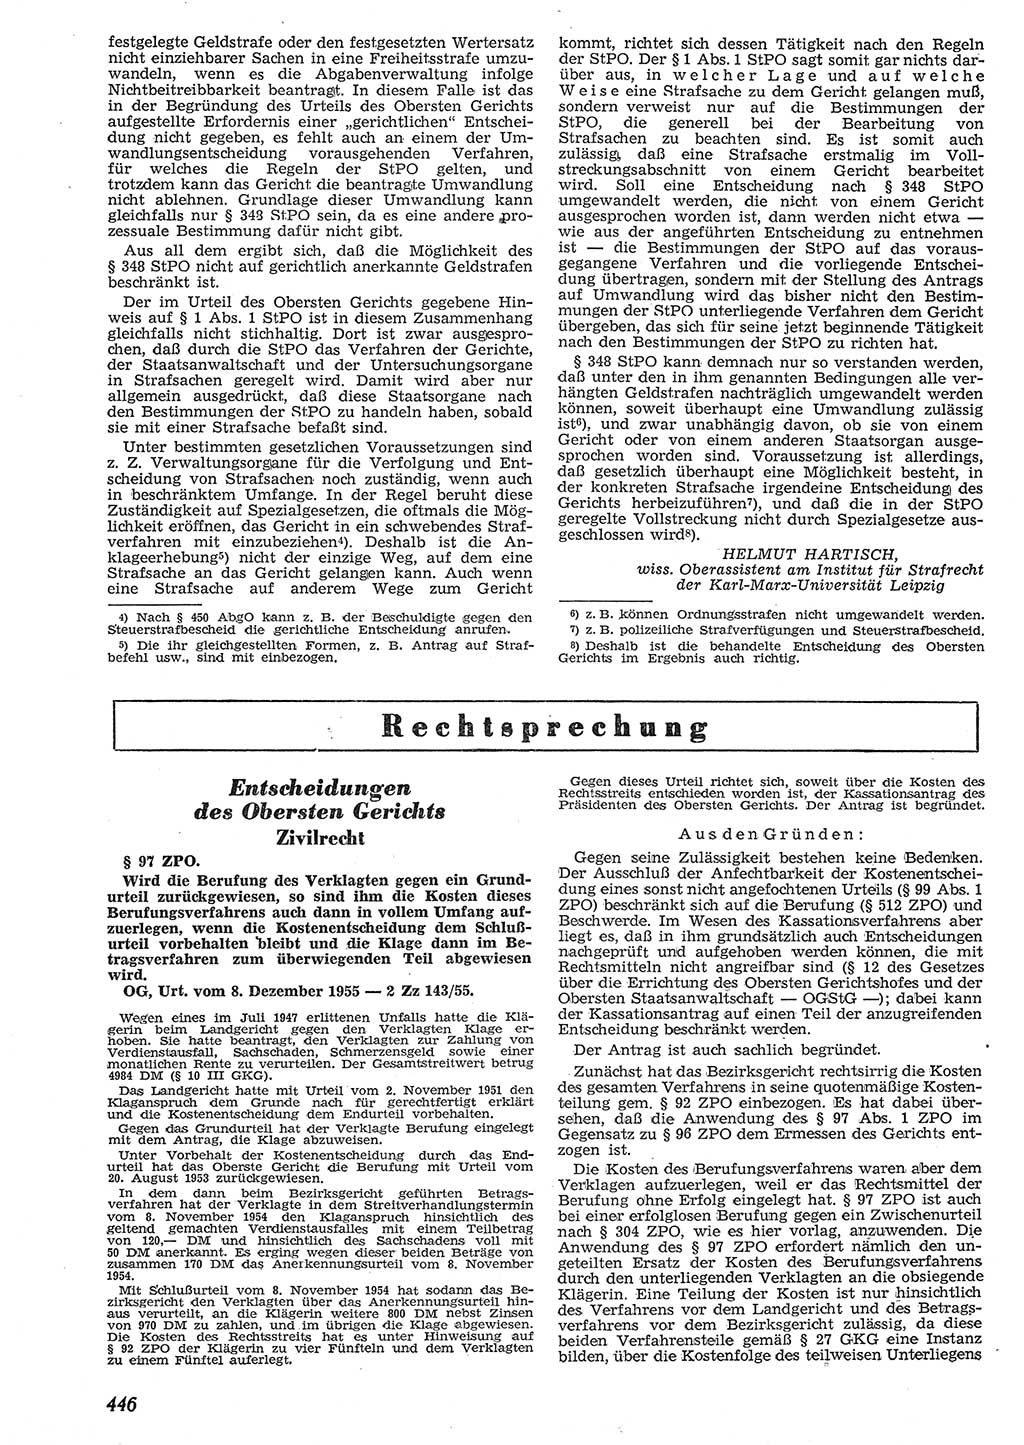 Neue Justiz (NJ), Zeitschrift für Recht und Rechtswissenschaft [Deutsche Demokratische Republik (DDR)], 10. Jahrgang 1956, Seite 446 (NJ DDR 1956, S. 446)